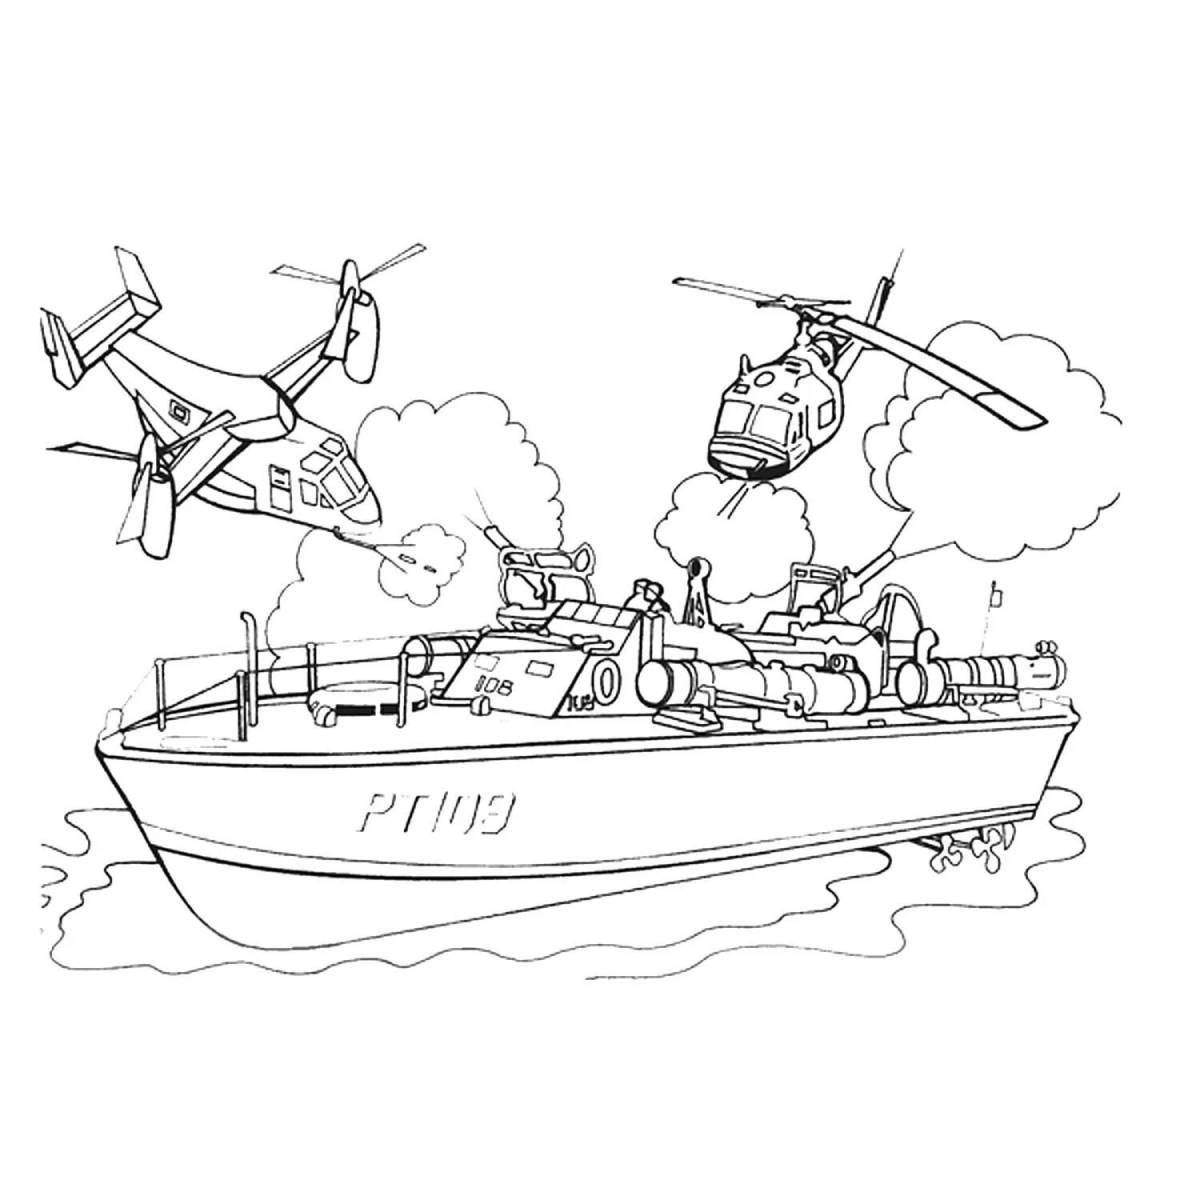 Привлекательная раскраска военного корабля для мальчиков